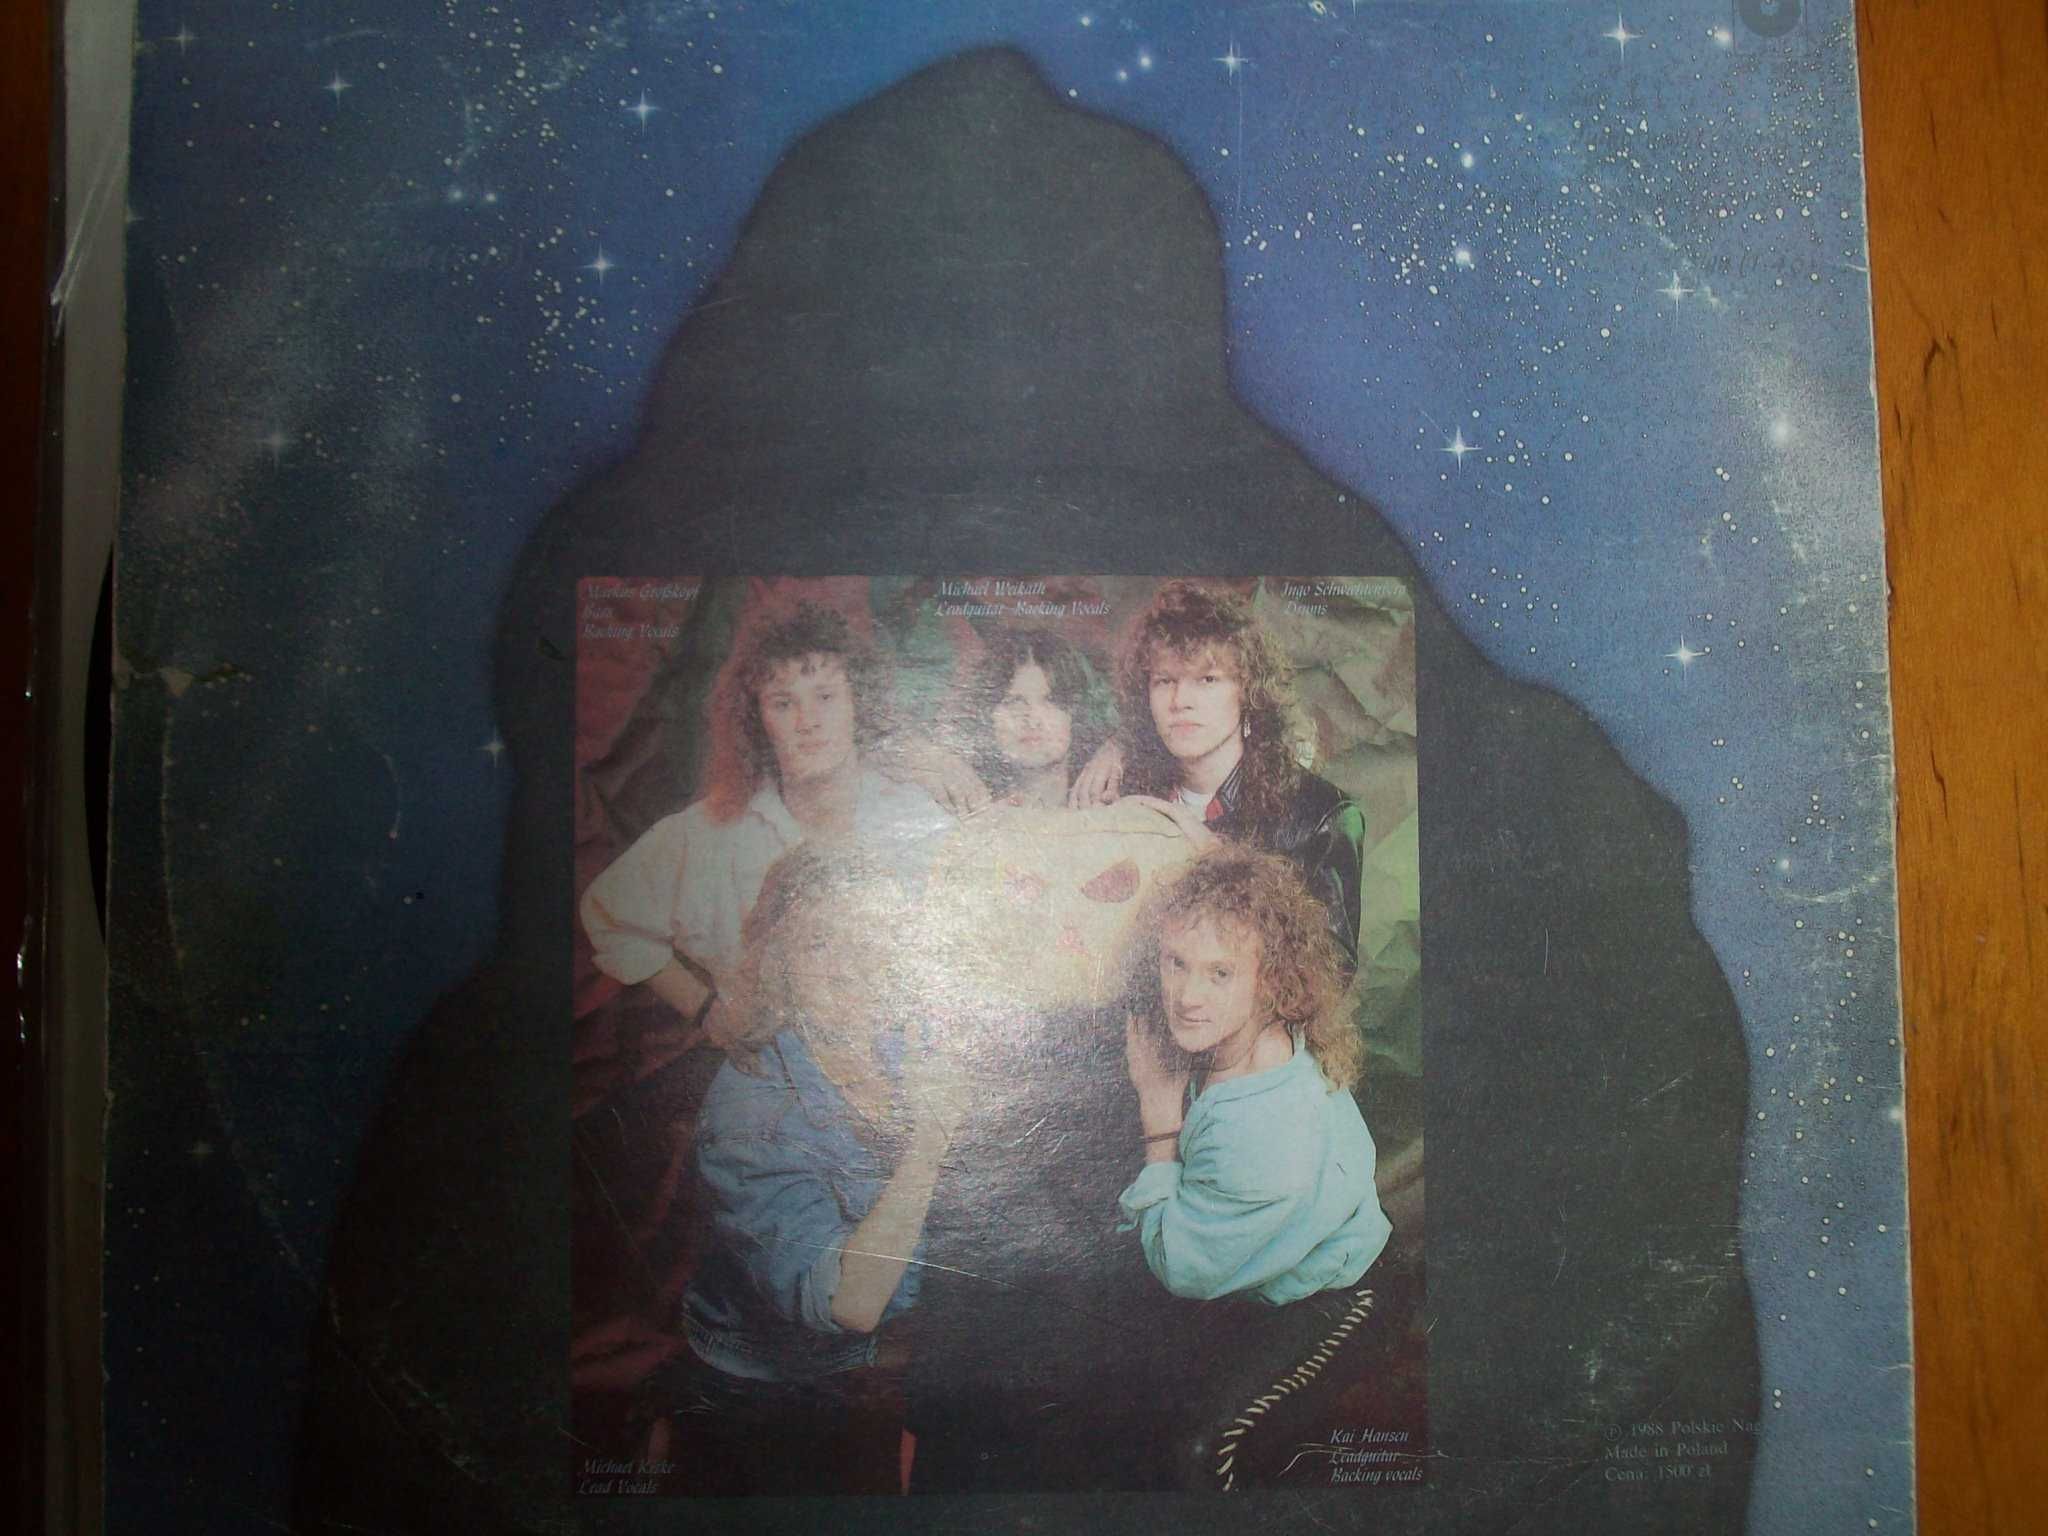 Płyta długogrająca analogowa Helloween